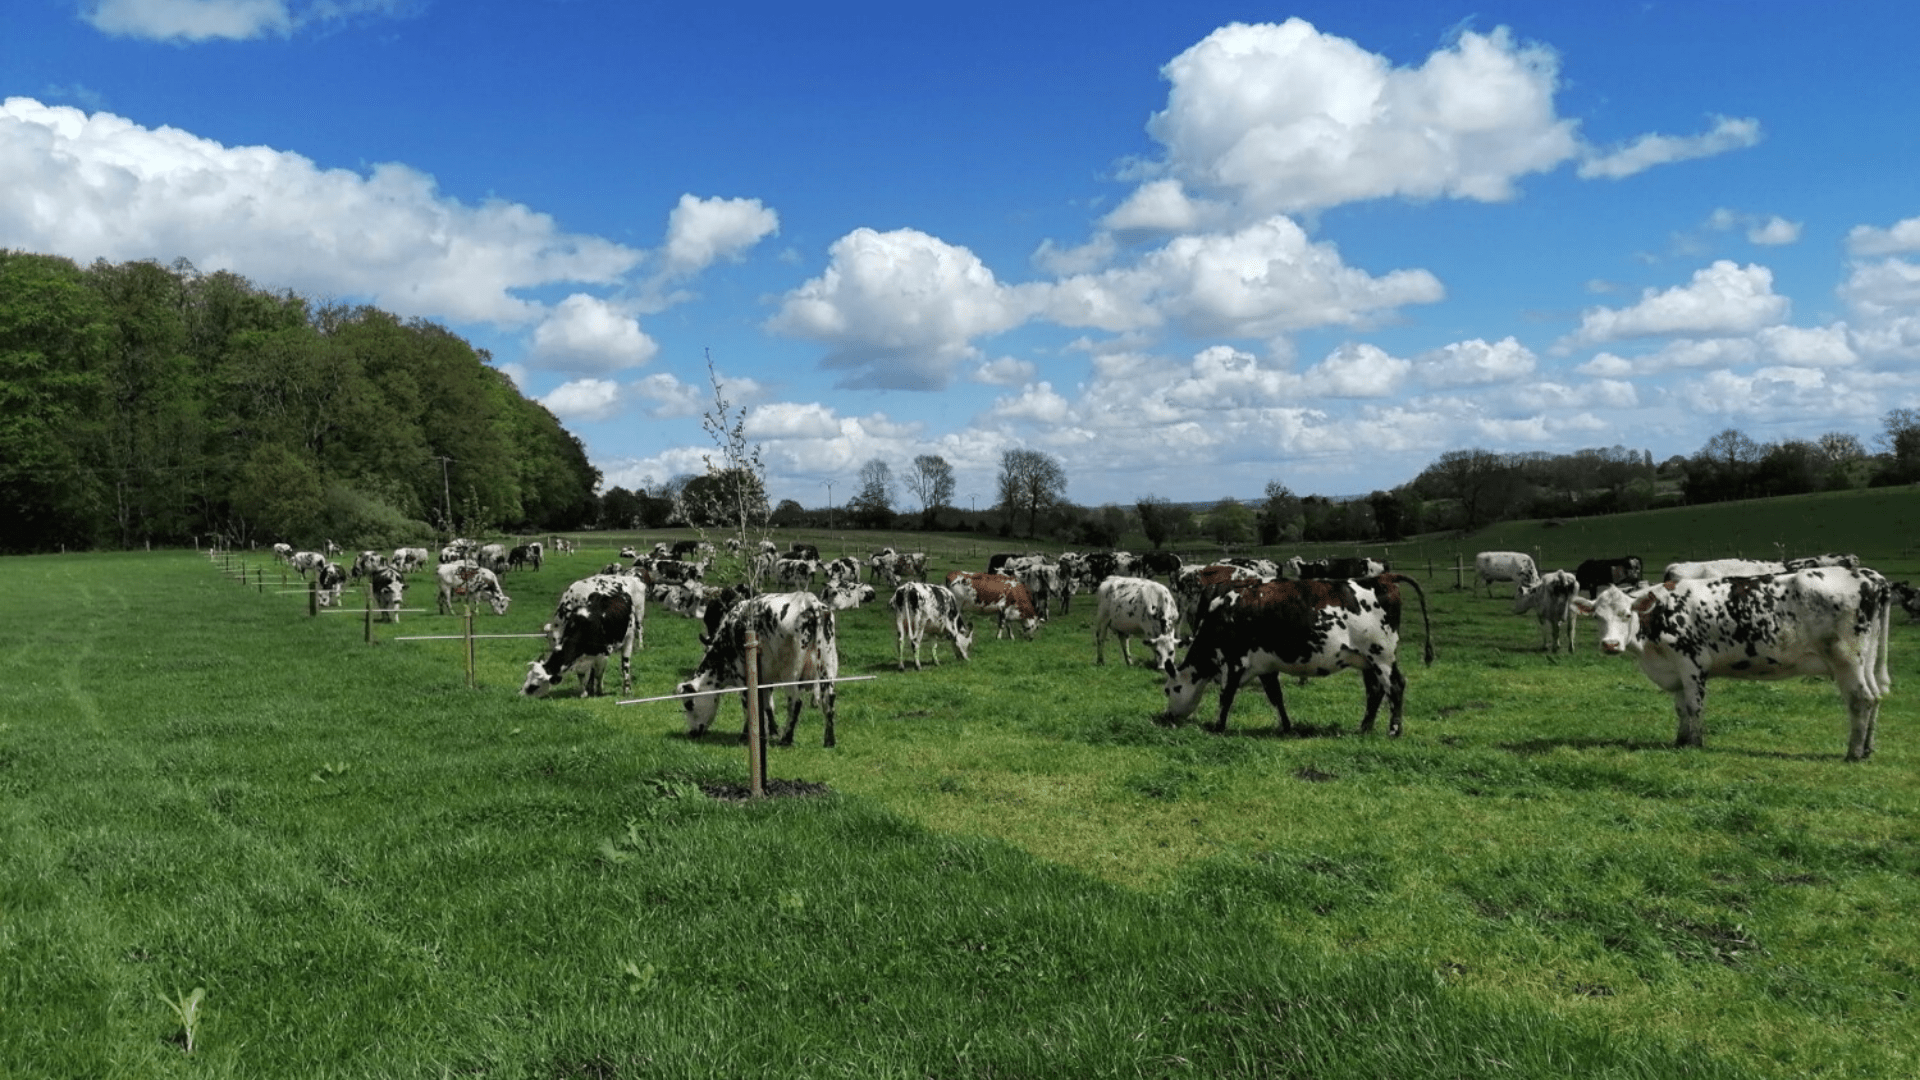 Vaches laitières du domaine de Merval.